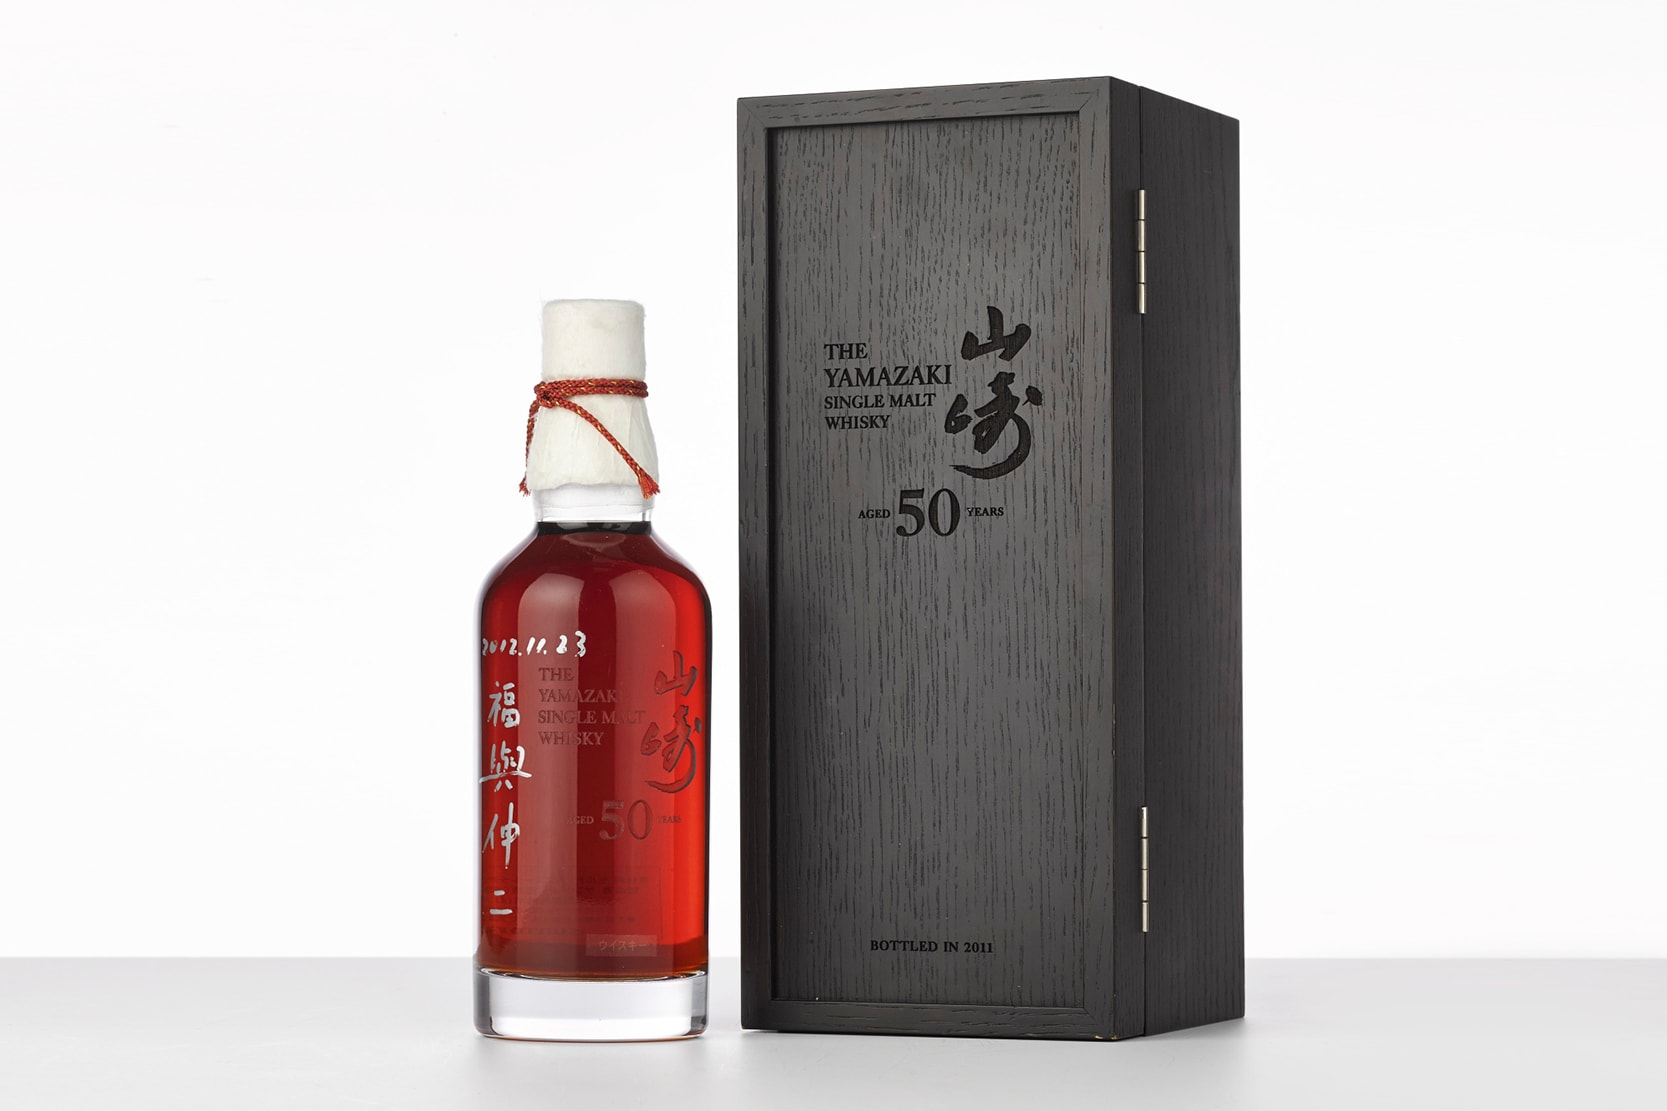 Yamakazi Single Malt Whisky 50 Years Auction Record 300000 USD sothebys